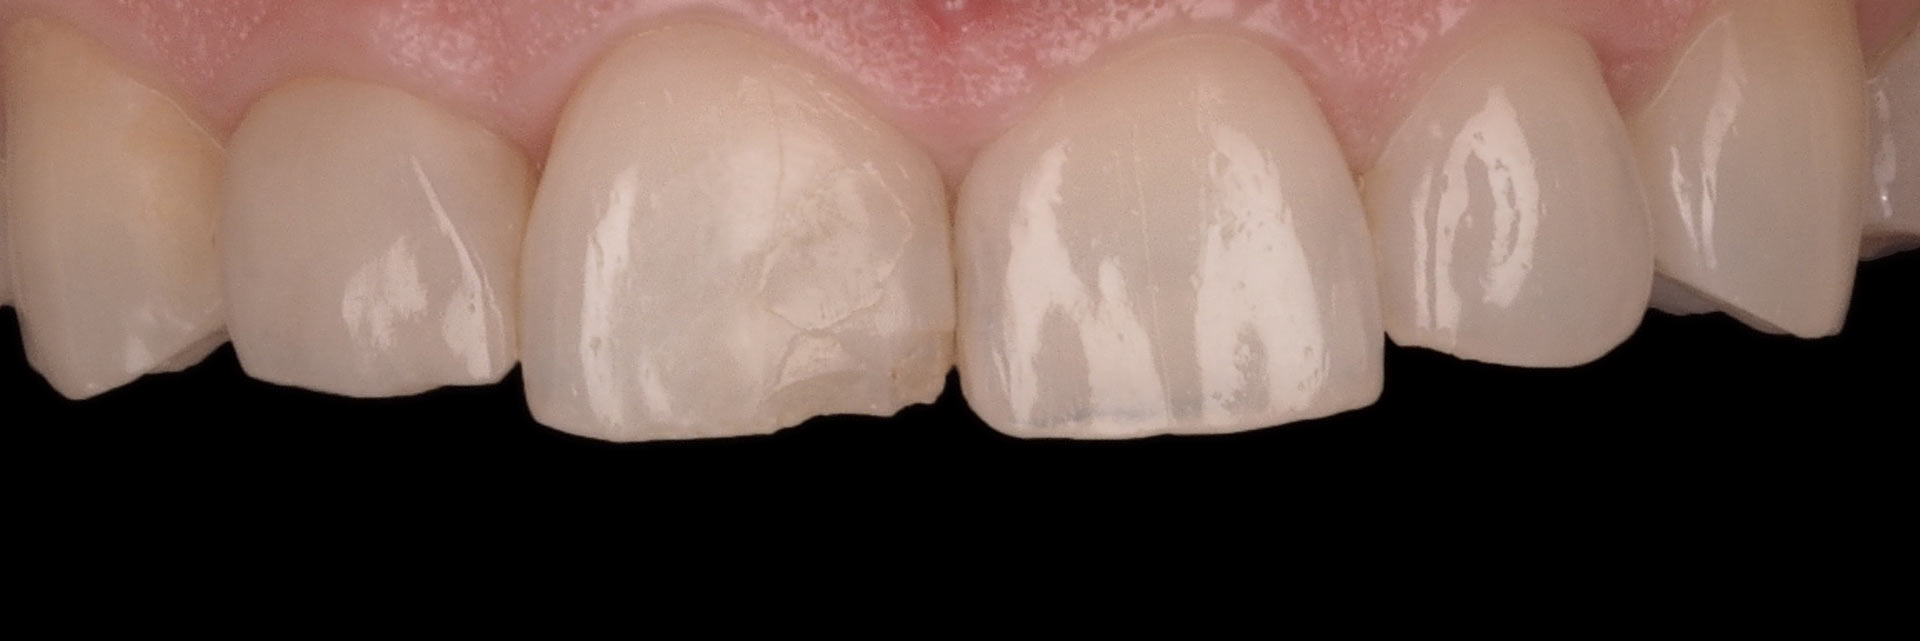 Caso Clínico Carillas dentales - Antes